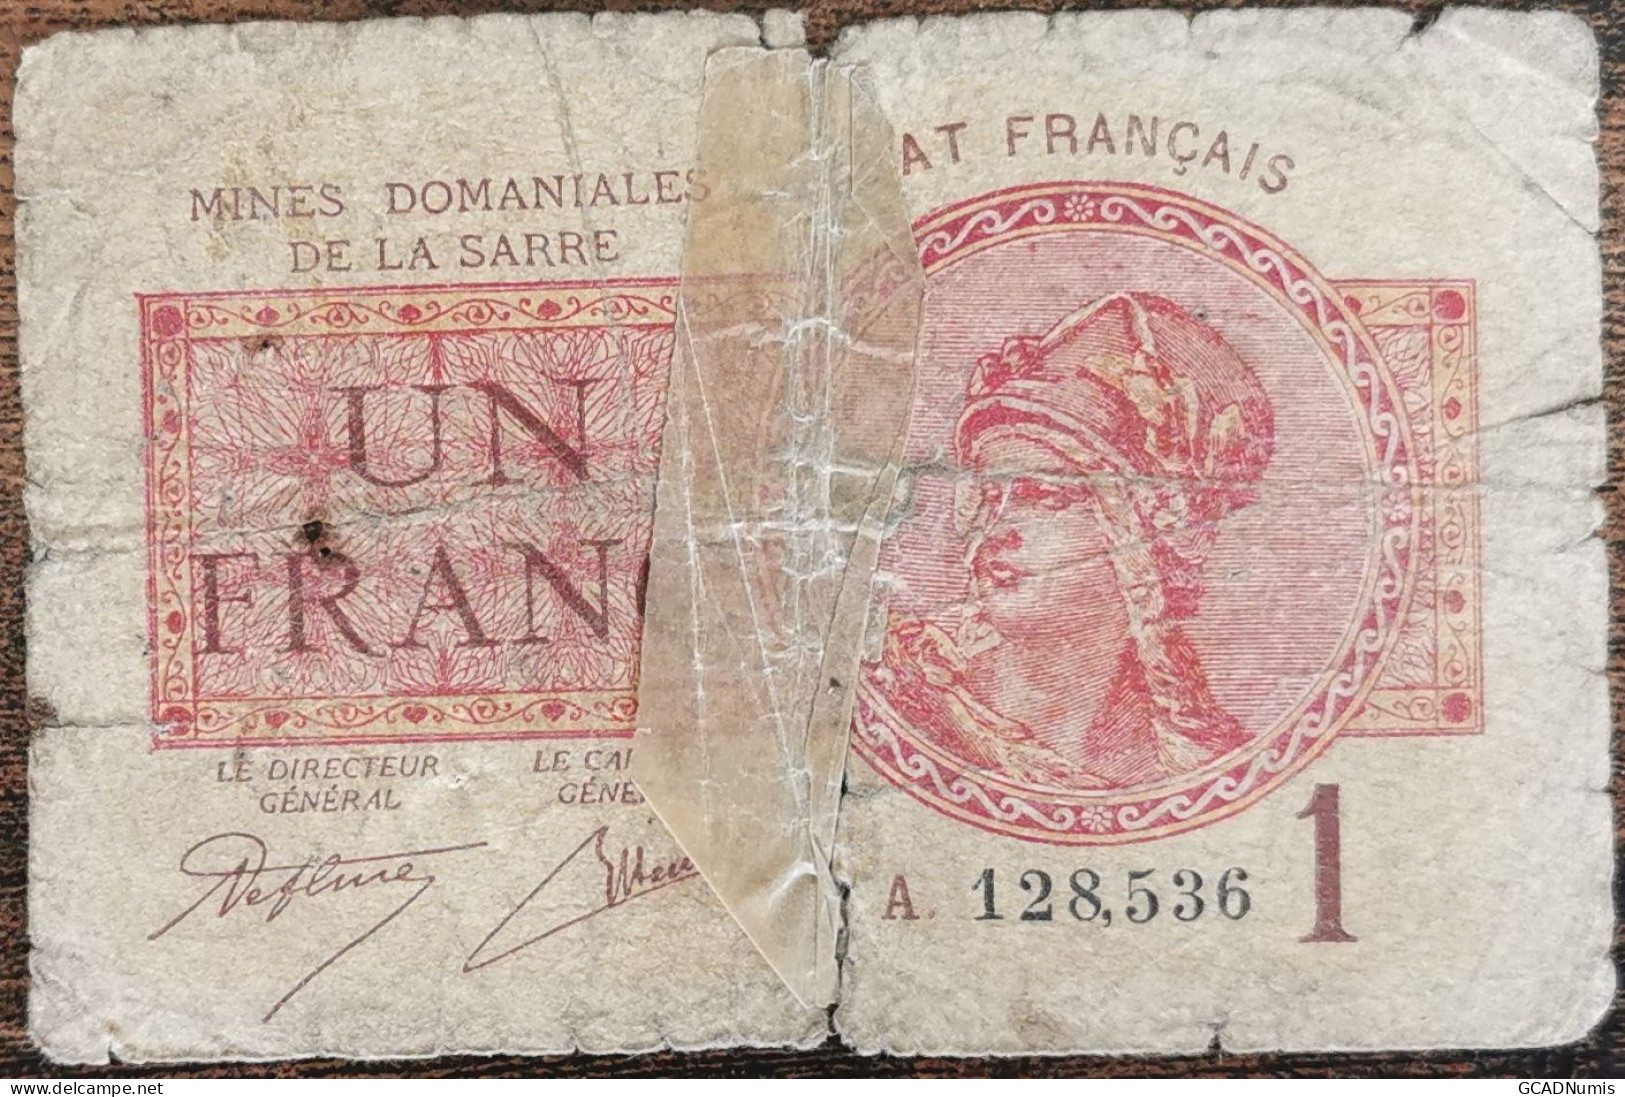 Billet De 1 Franc MINES DOMANIALES DE LA SARRE état Français A 128536  Cf Photos - 1947 Sarre